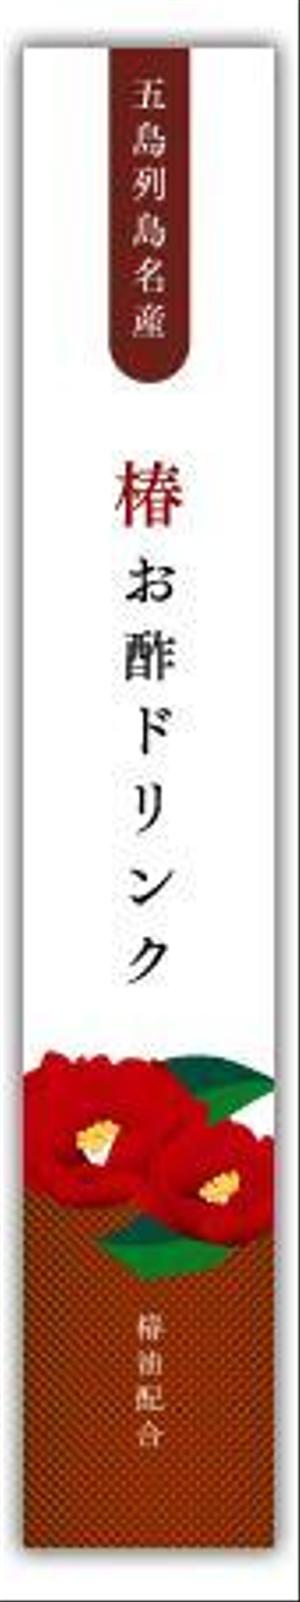 mikan (mikan-de)さんの長崎県五島列島のお土産「椿お酢ドリンク」のラベルデザインへの提案